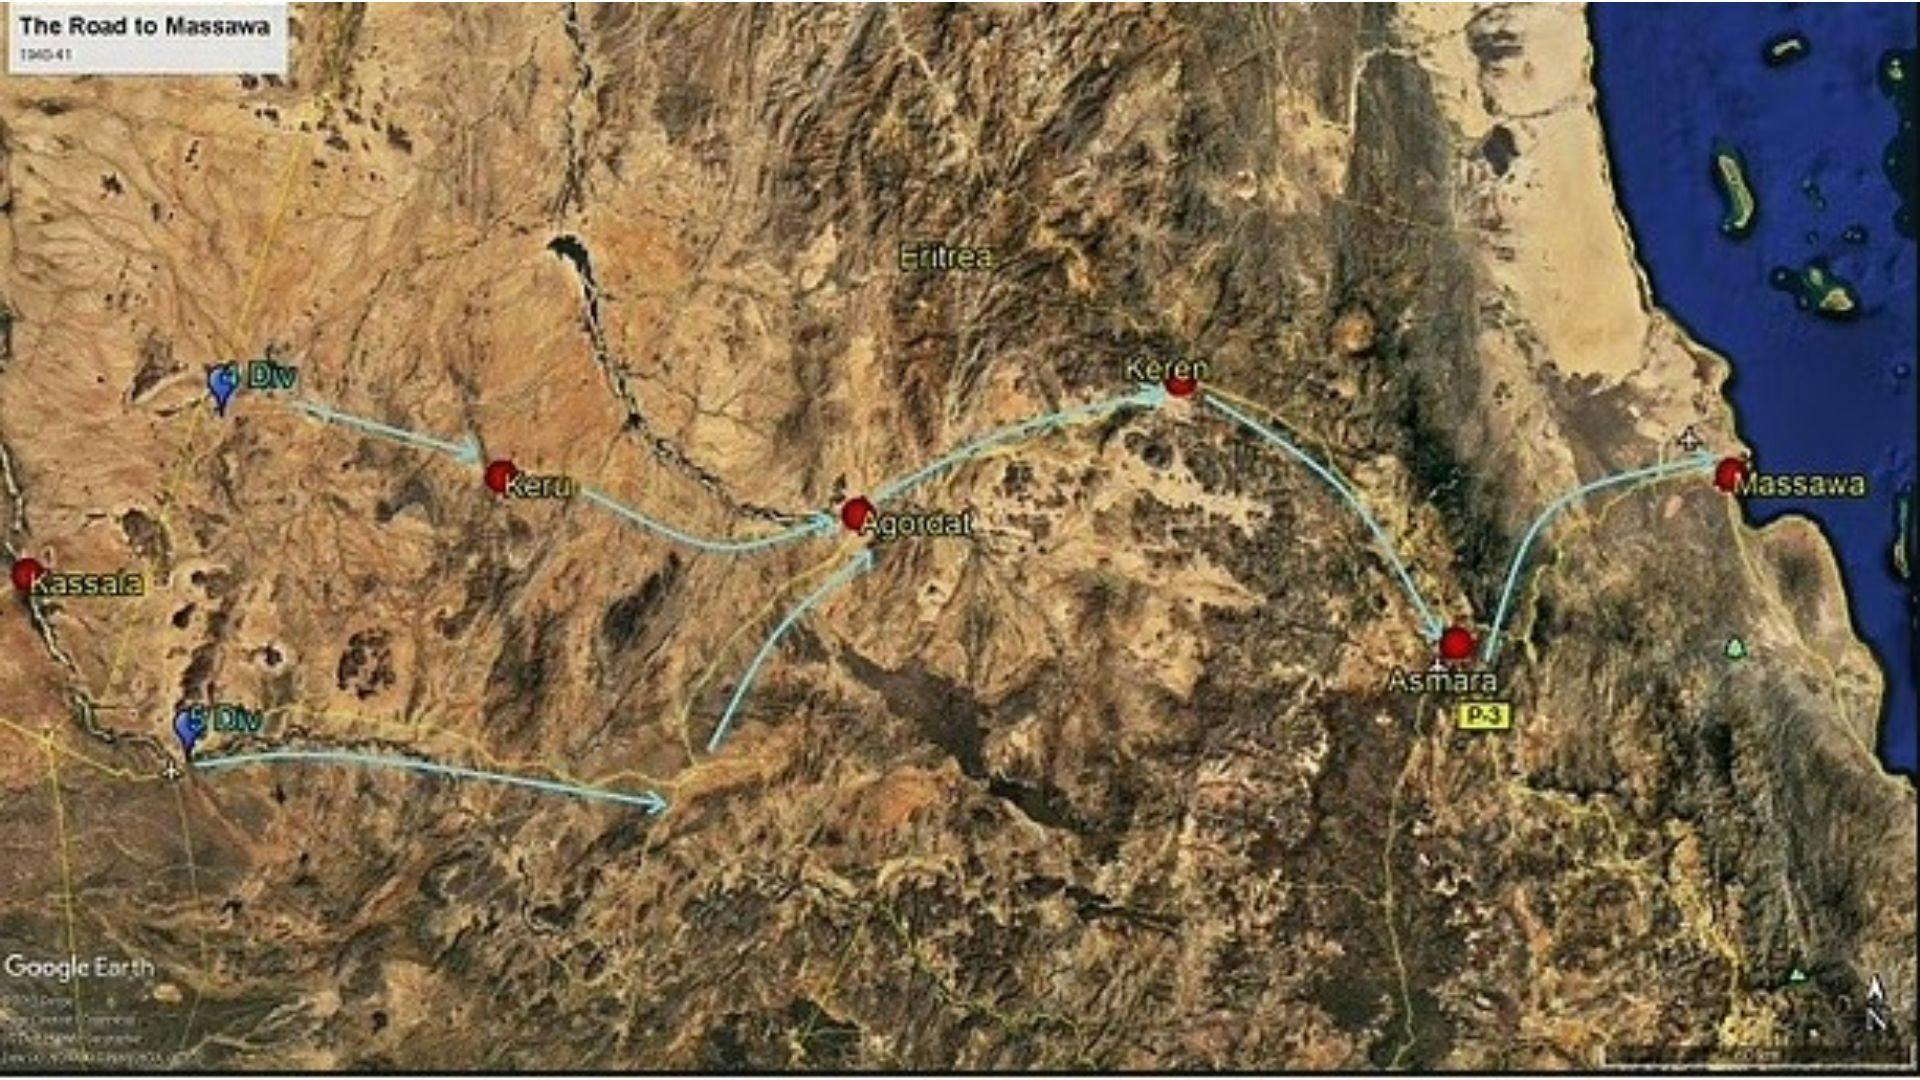 Road to Massawa | Wikimedia Commons